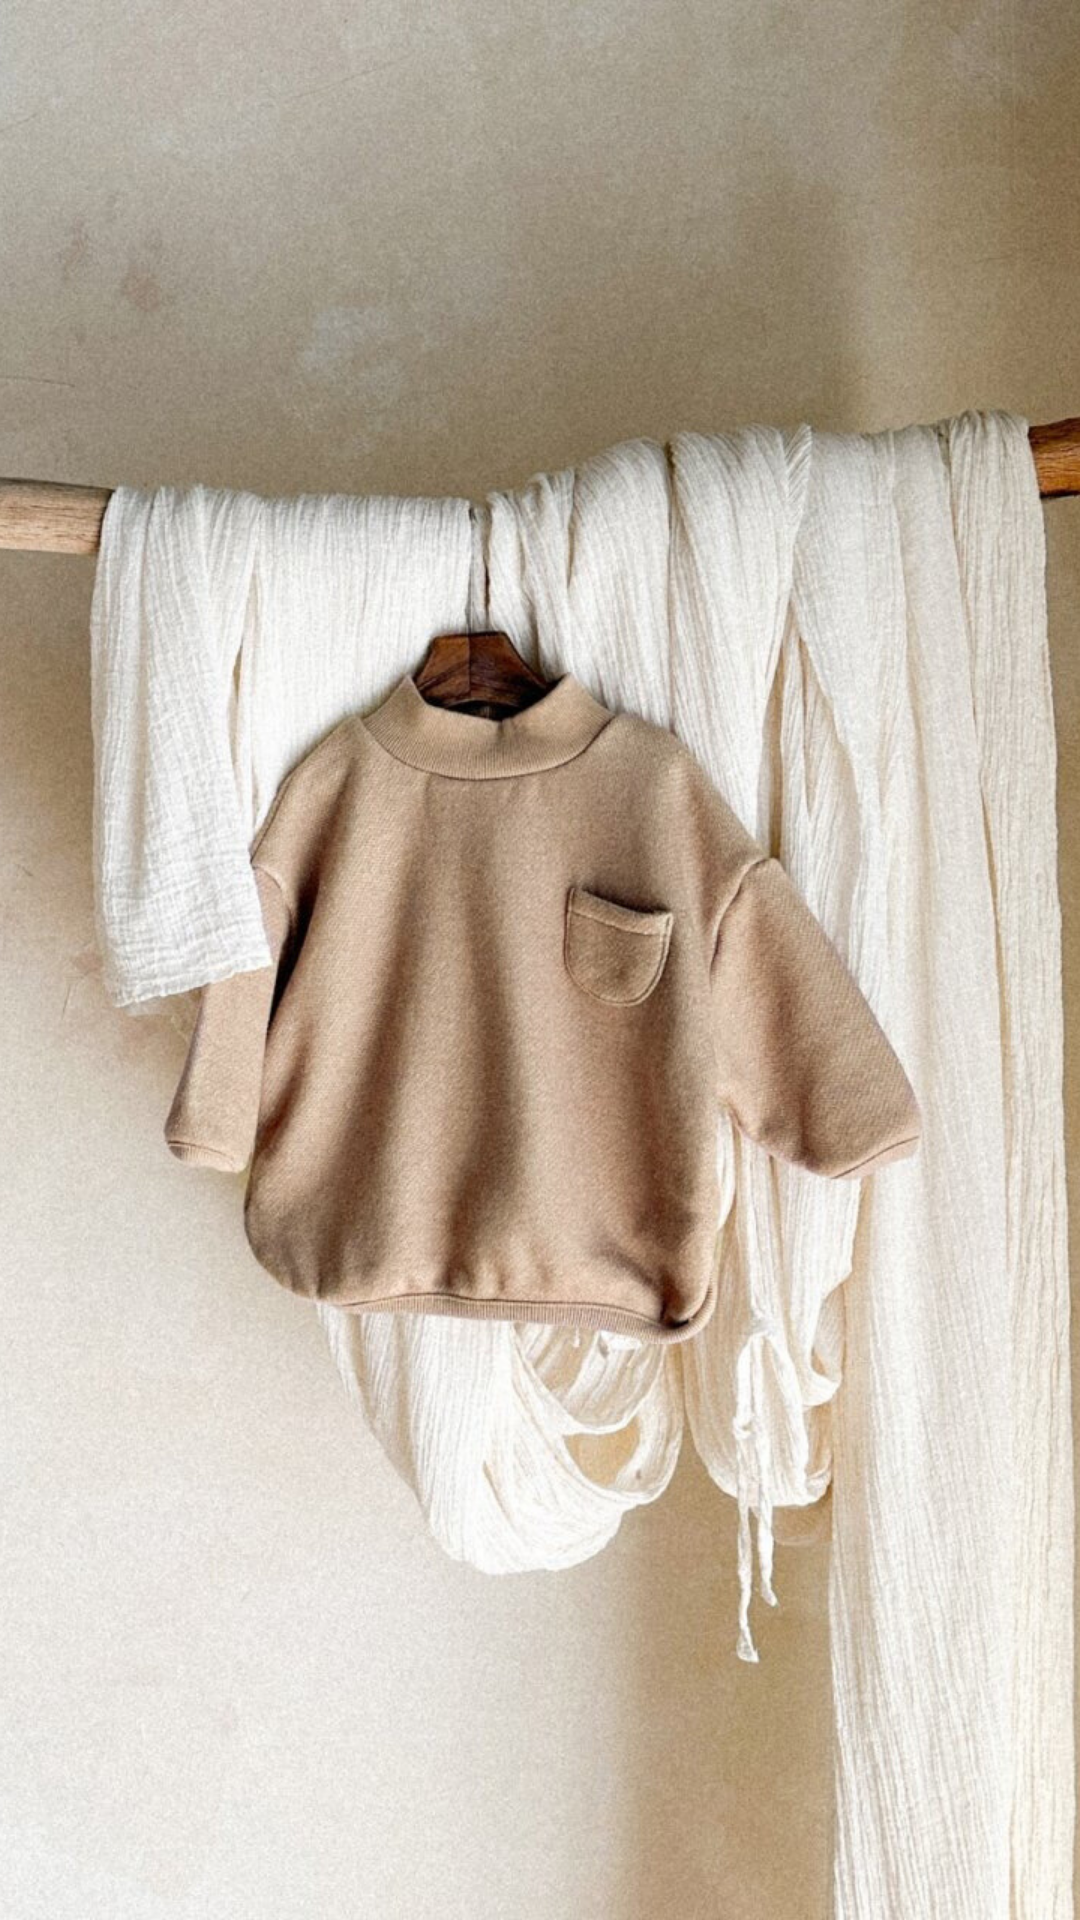 Caramel Sweatshirt - Minimalistische Kinderpullover mit Rollkragen in Pastellfarben